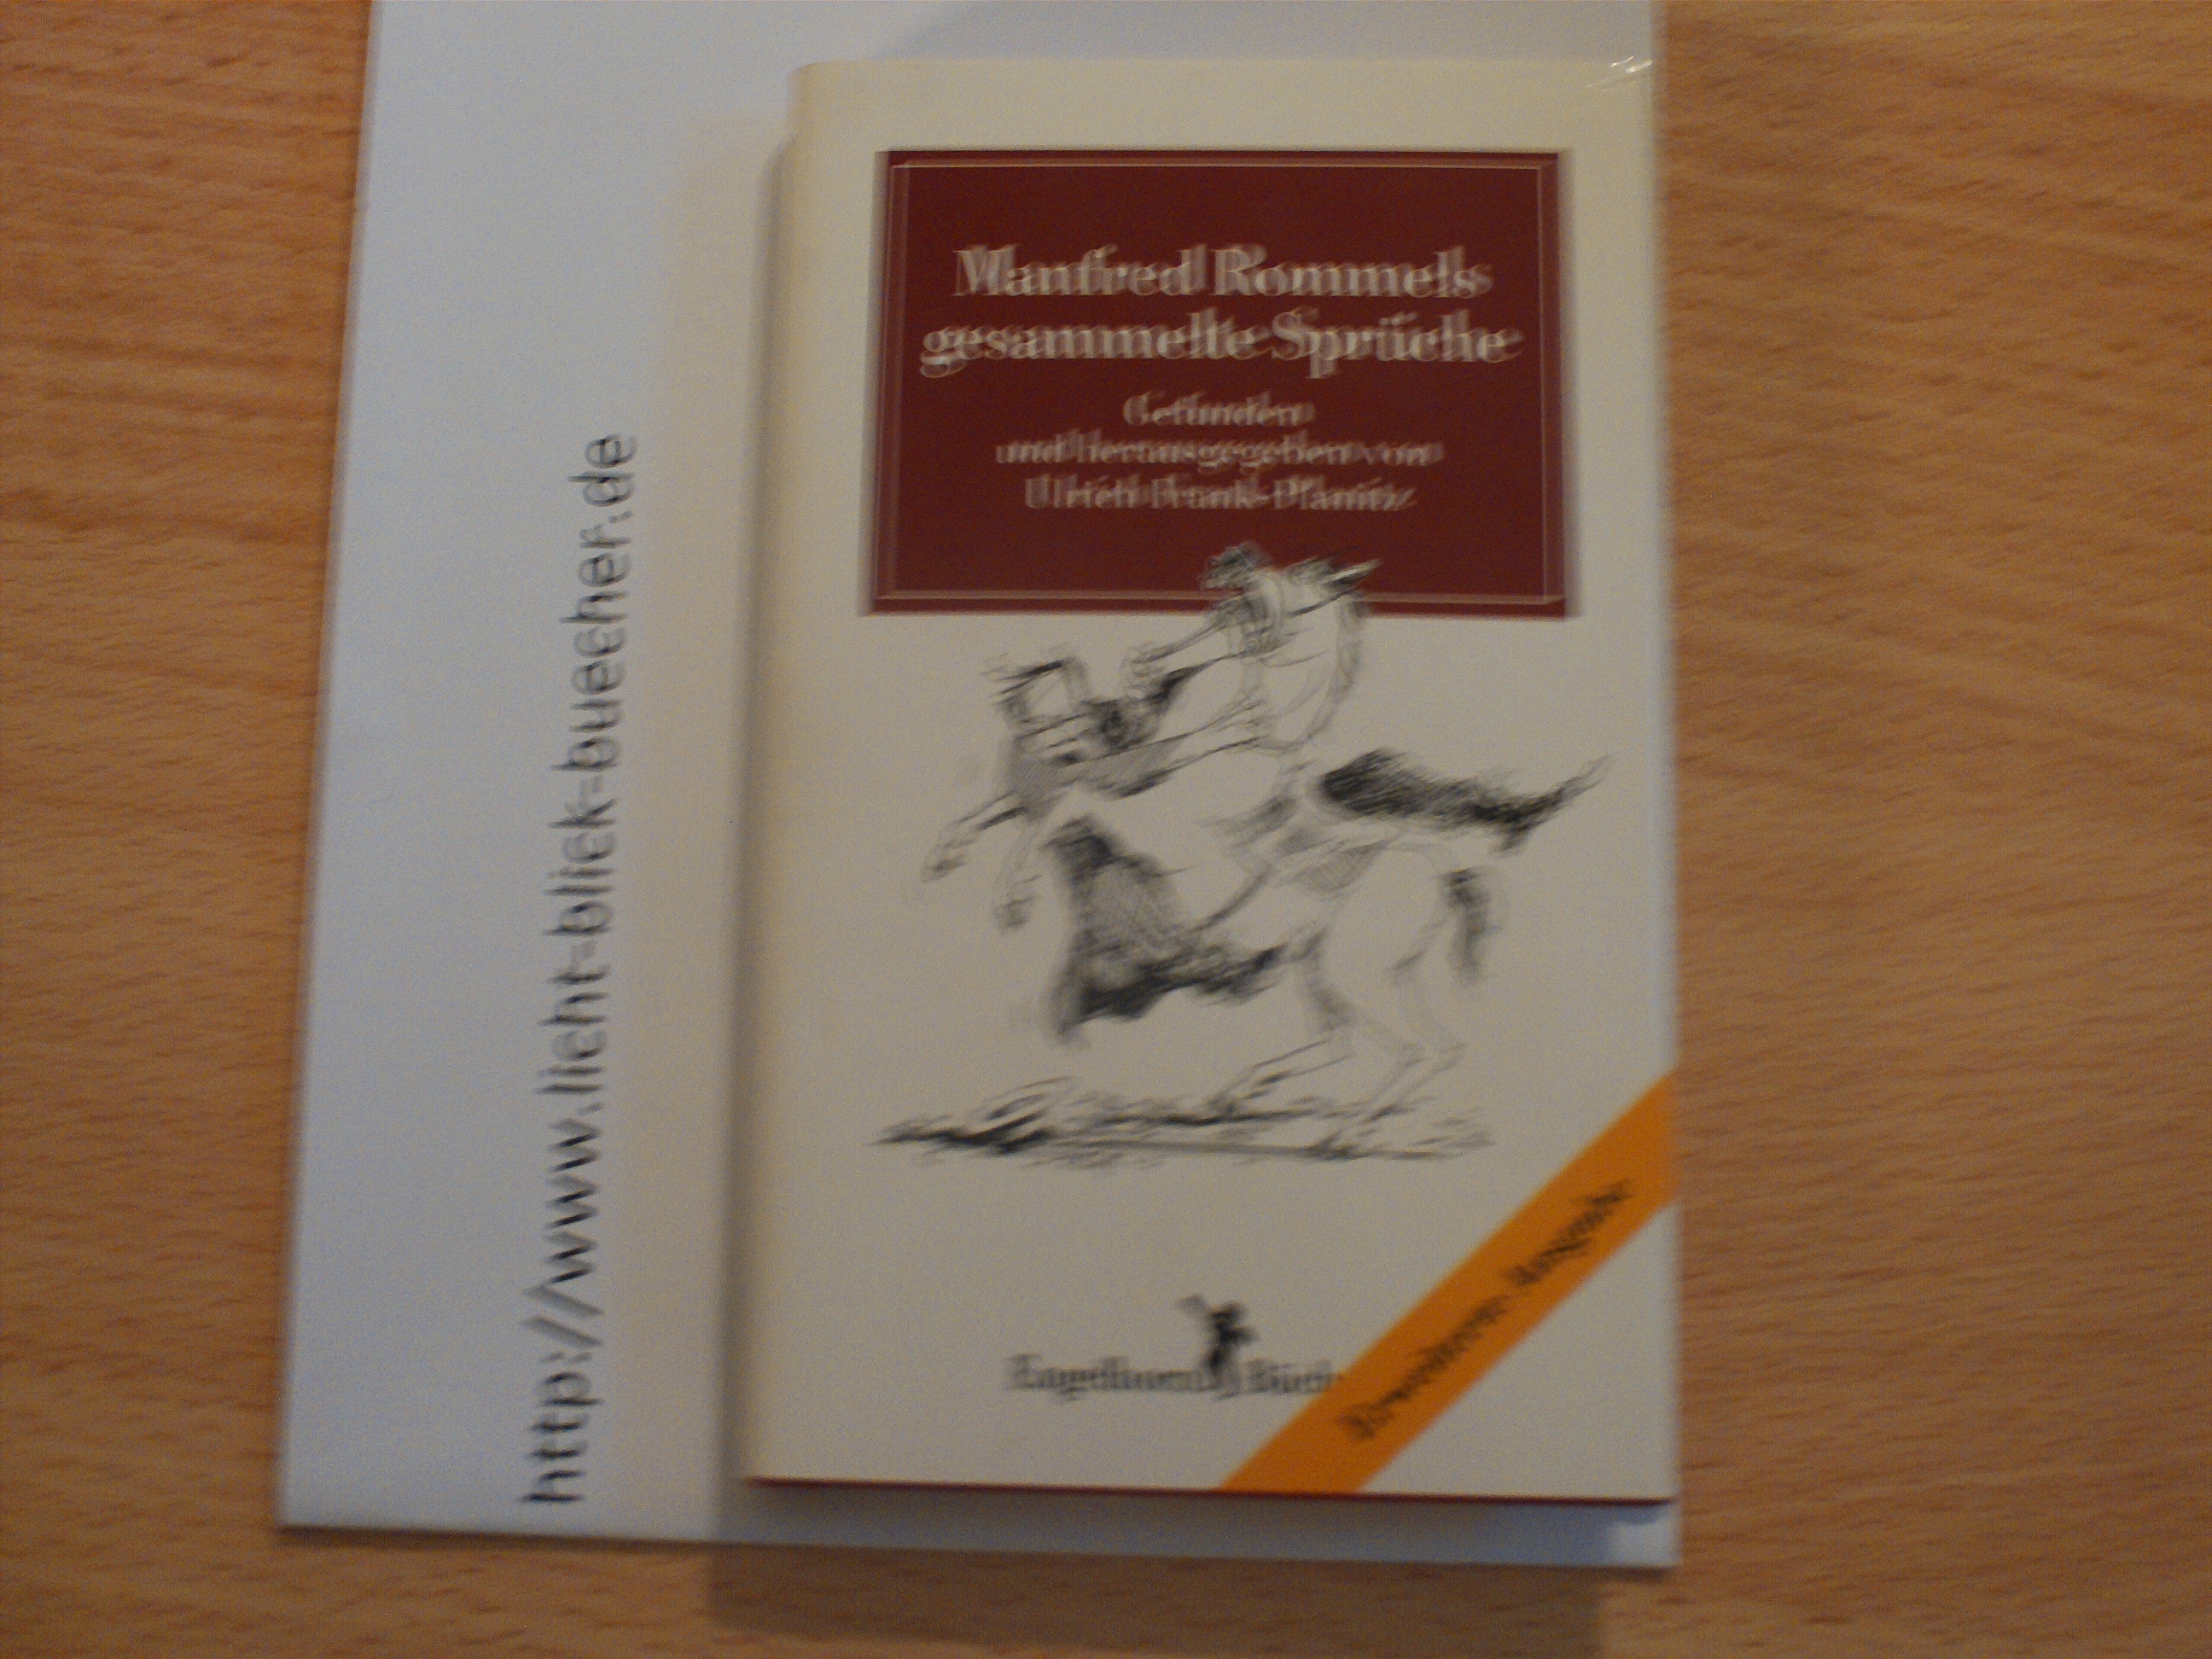 Manfred Rommels gesammelte Spruechegefunden und herausgegeben von Ulrich Frank-PlanÃ­tz